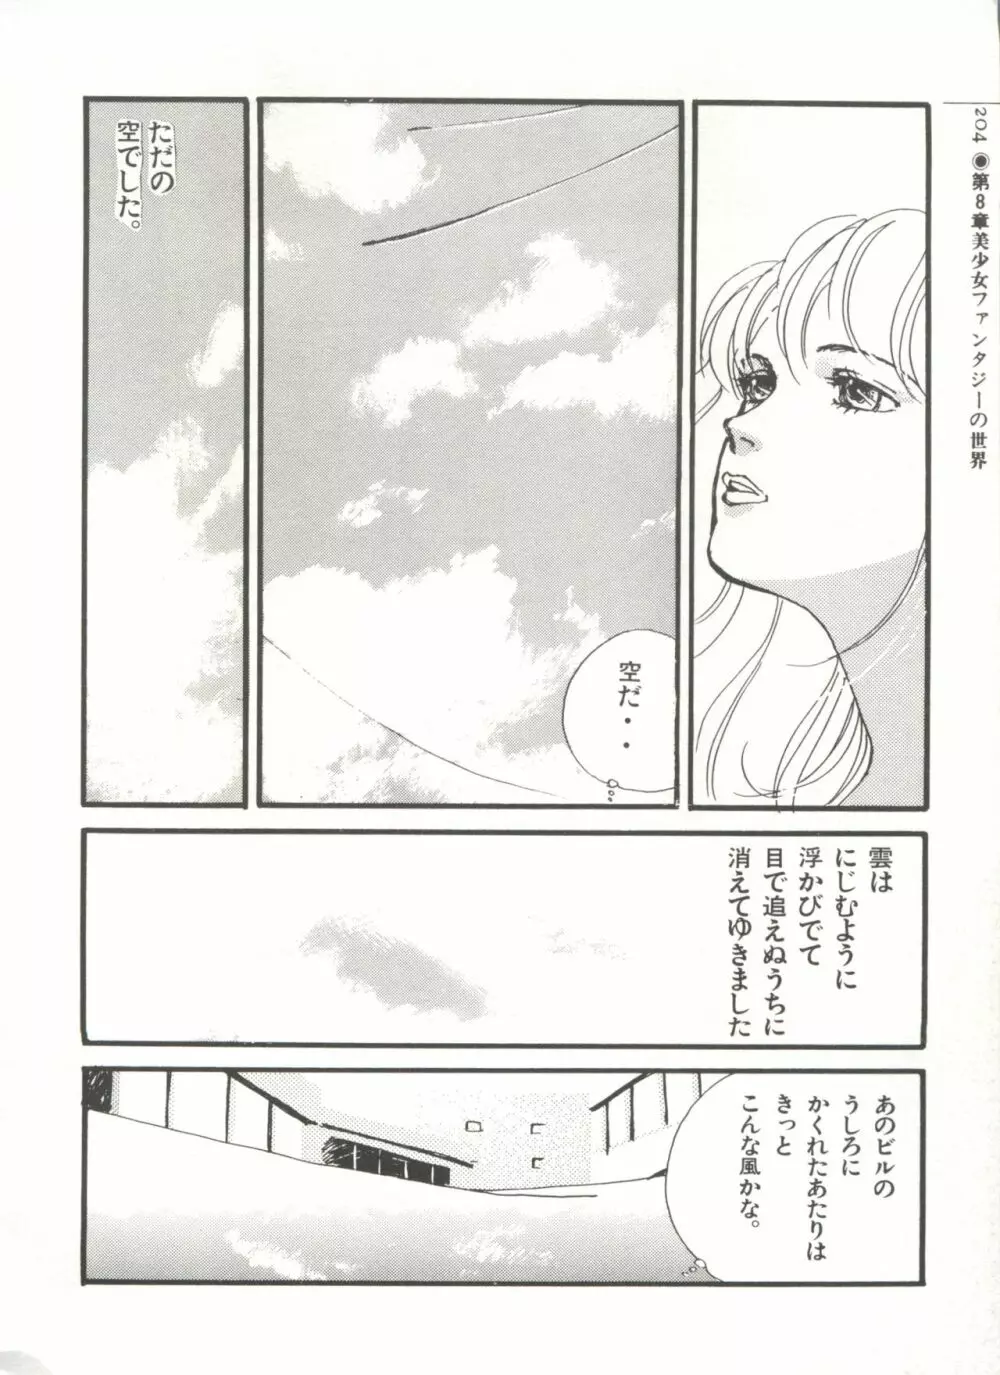 [Anthology] 美少女症候群(2) Lolita syndrome (よろず) 207ページ